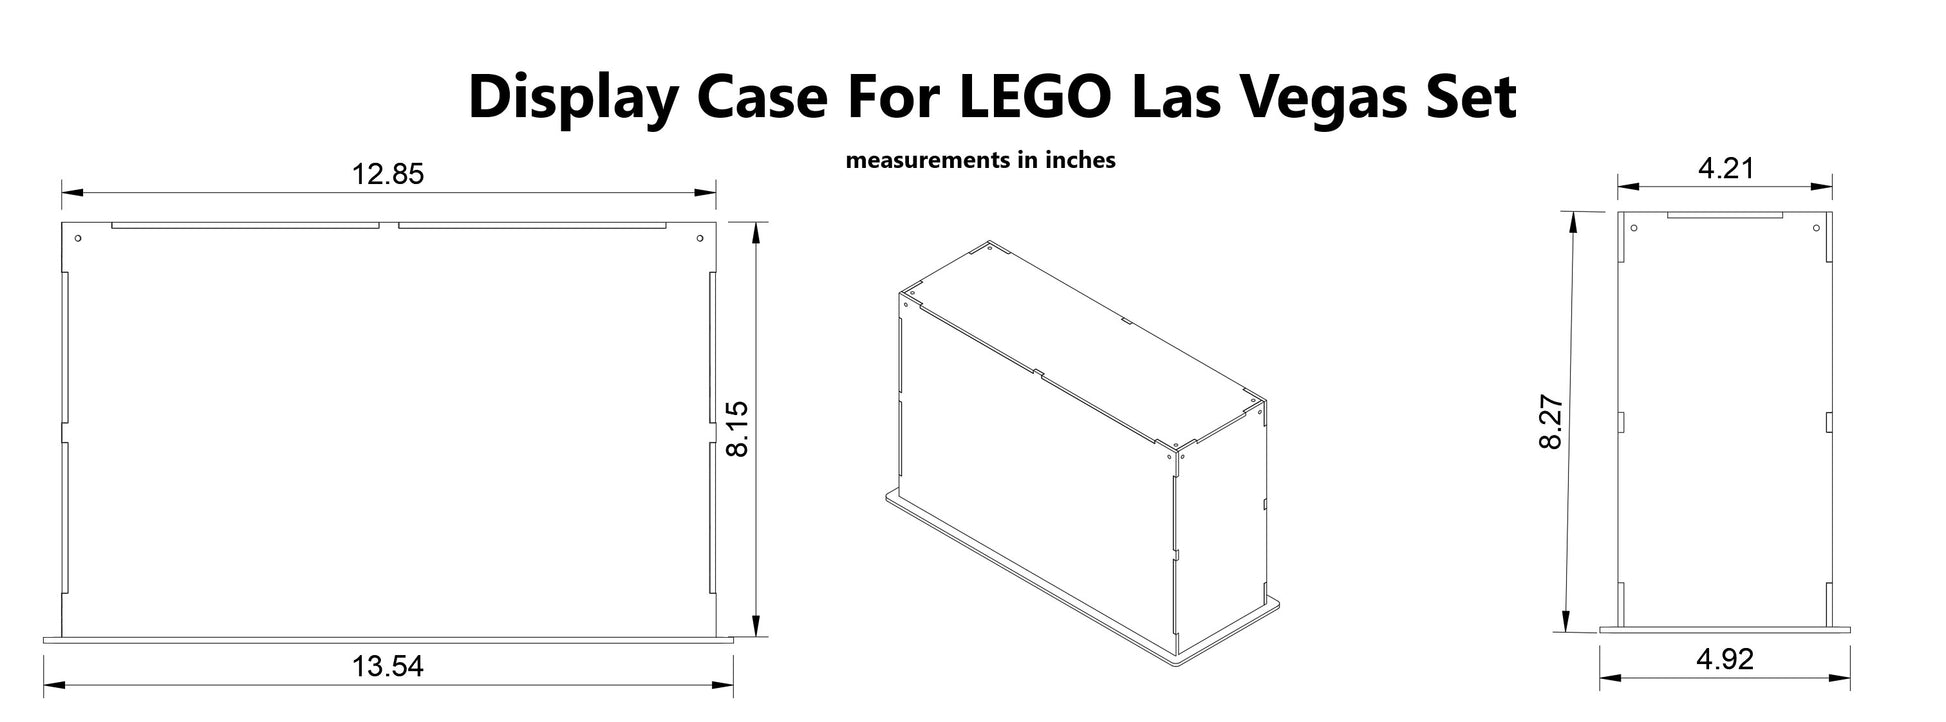 LEGO 21047 Las Vegas Instructions, Architecture